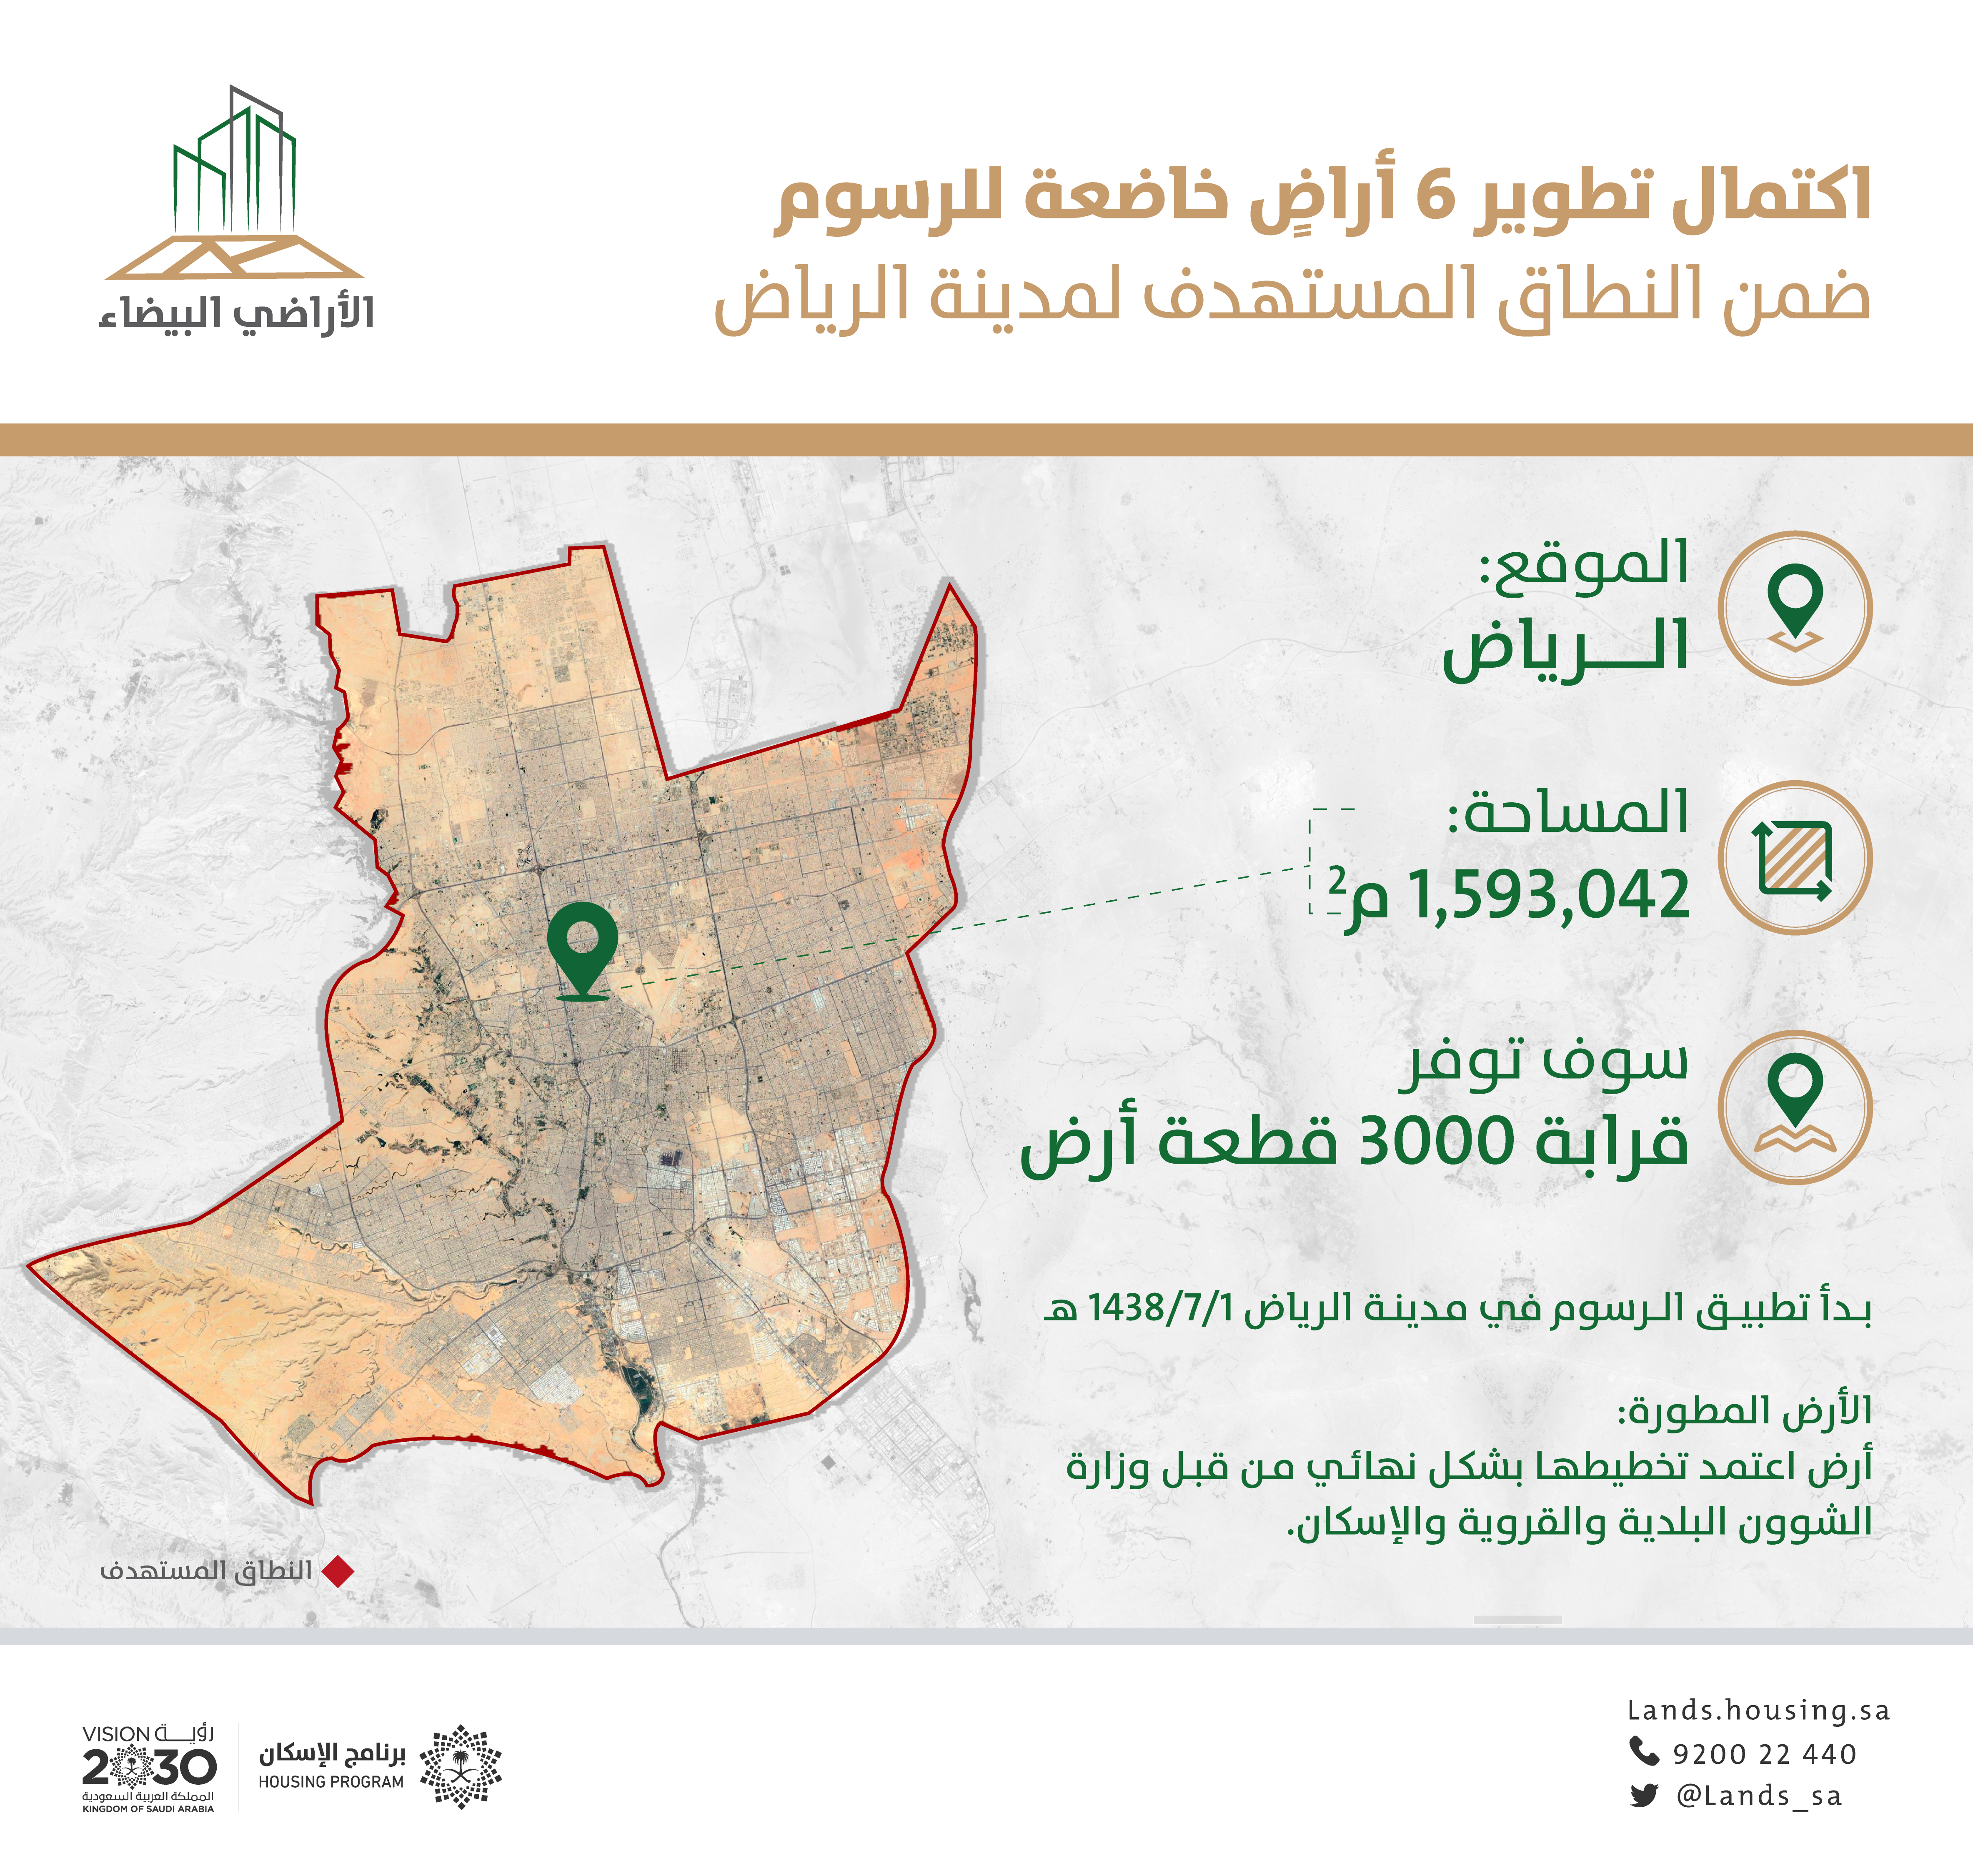 "الأراضي البيضاء": تطوير 6 أراض من قِبل ملاكها في الرياض توفر قرابة 3 آلاف قطعة سكنية  